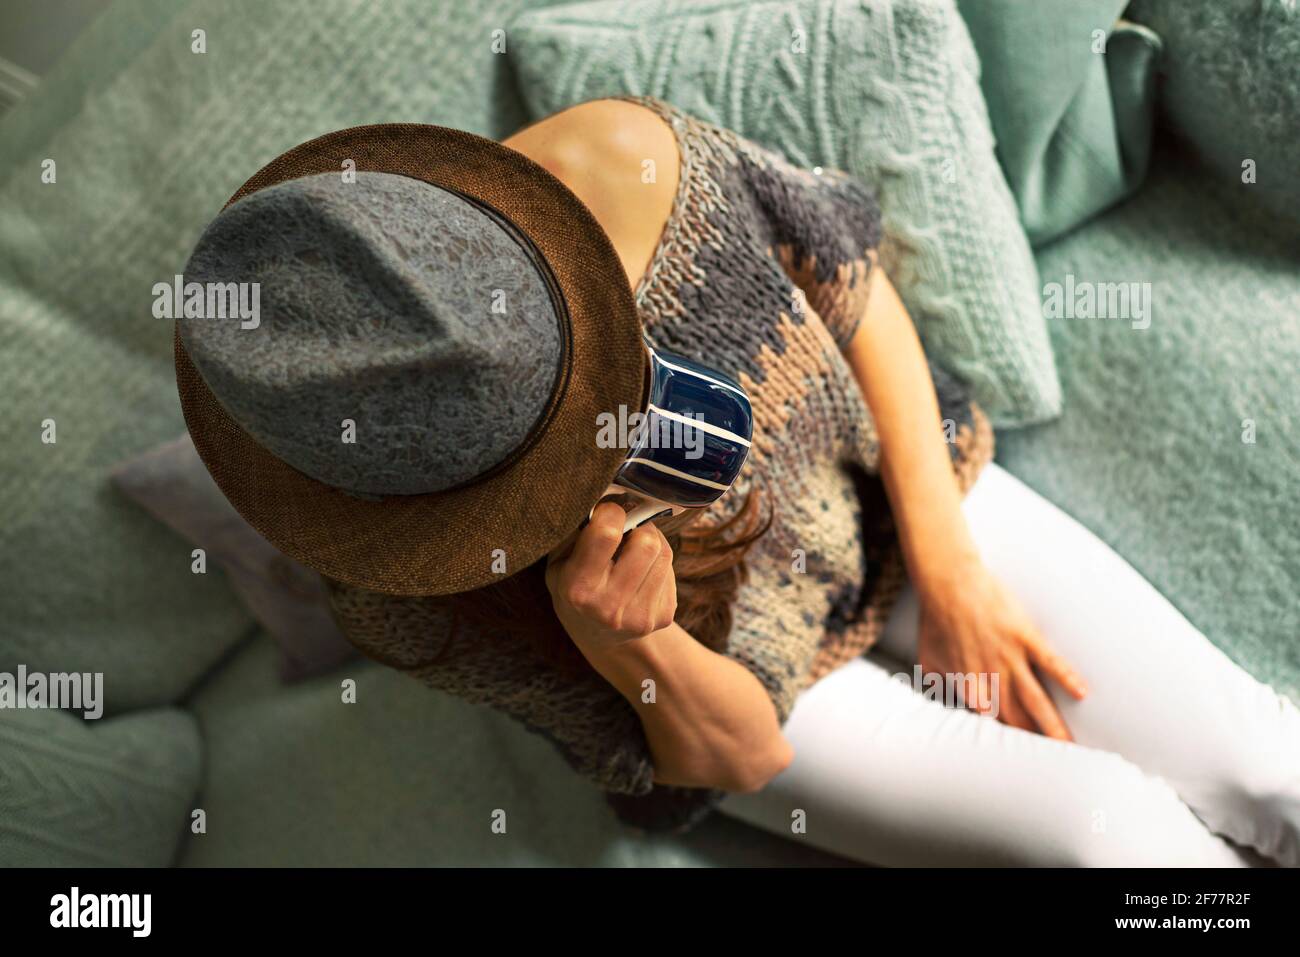 Dall'alto si può vedere una donna in un elegante maglieria e cappello seduto su un comodo divano con uova d'anatra che beve una bevanda calda. Stile di vita al chiuso, concetto di pausa tè o caffè Foto Stock